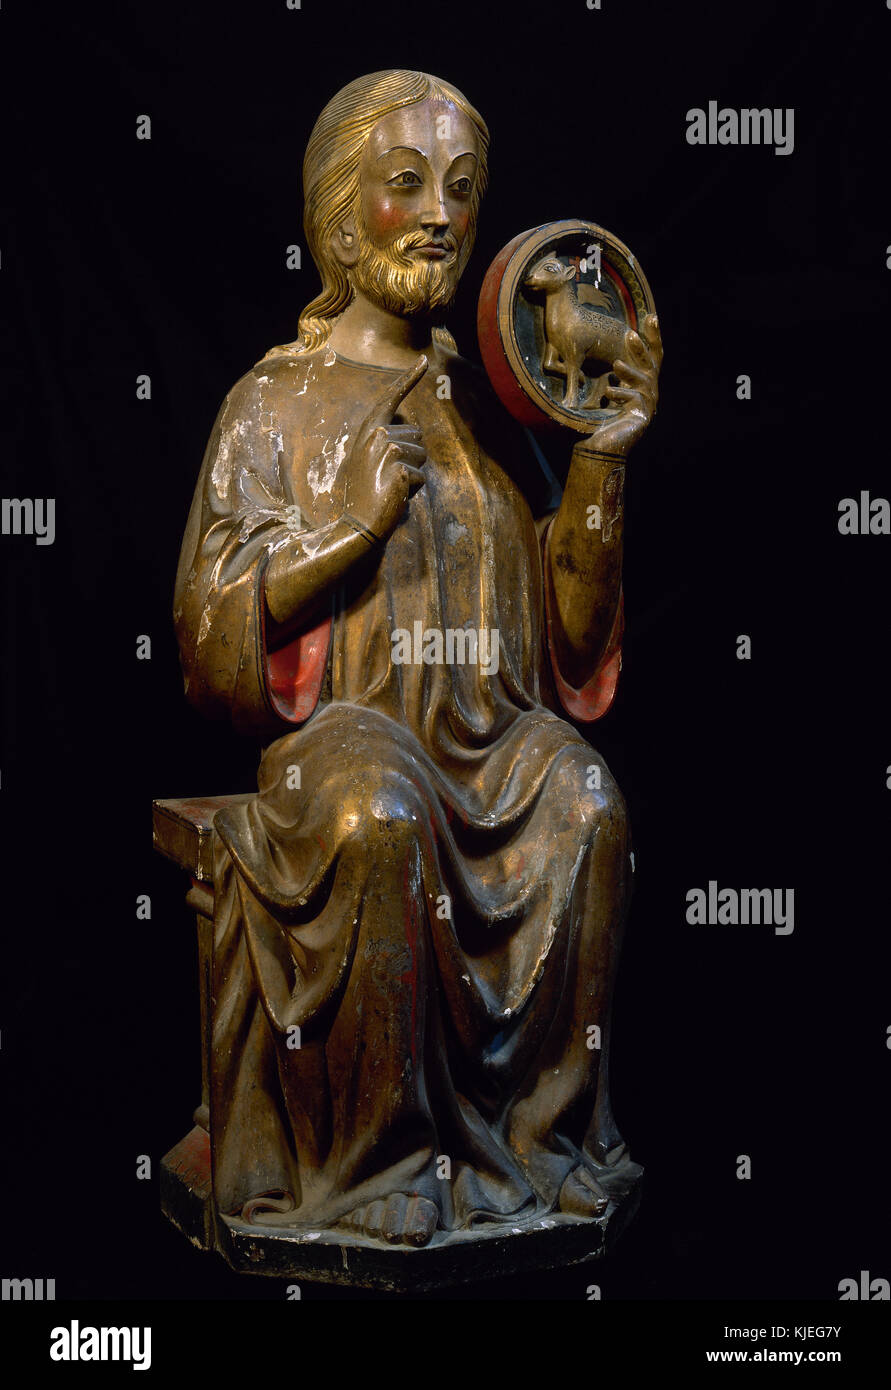 San Juan Bautista. estatua gótica. c. 1300. posiblemente de sant joan d'arties (Vall d'Aran, Cataluña). recubierto con láminas de plata y policromía. foto desde 1989. Restaurado. España. Foto de stock